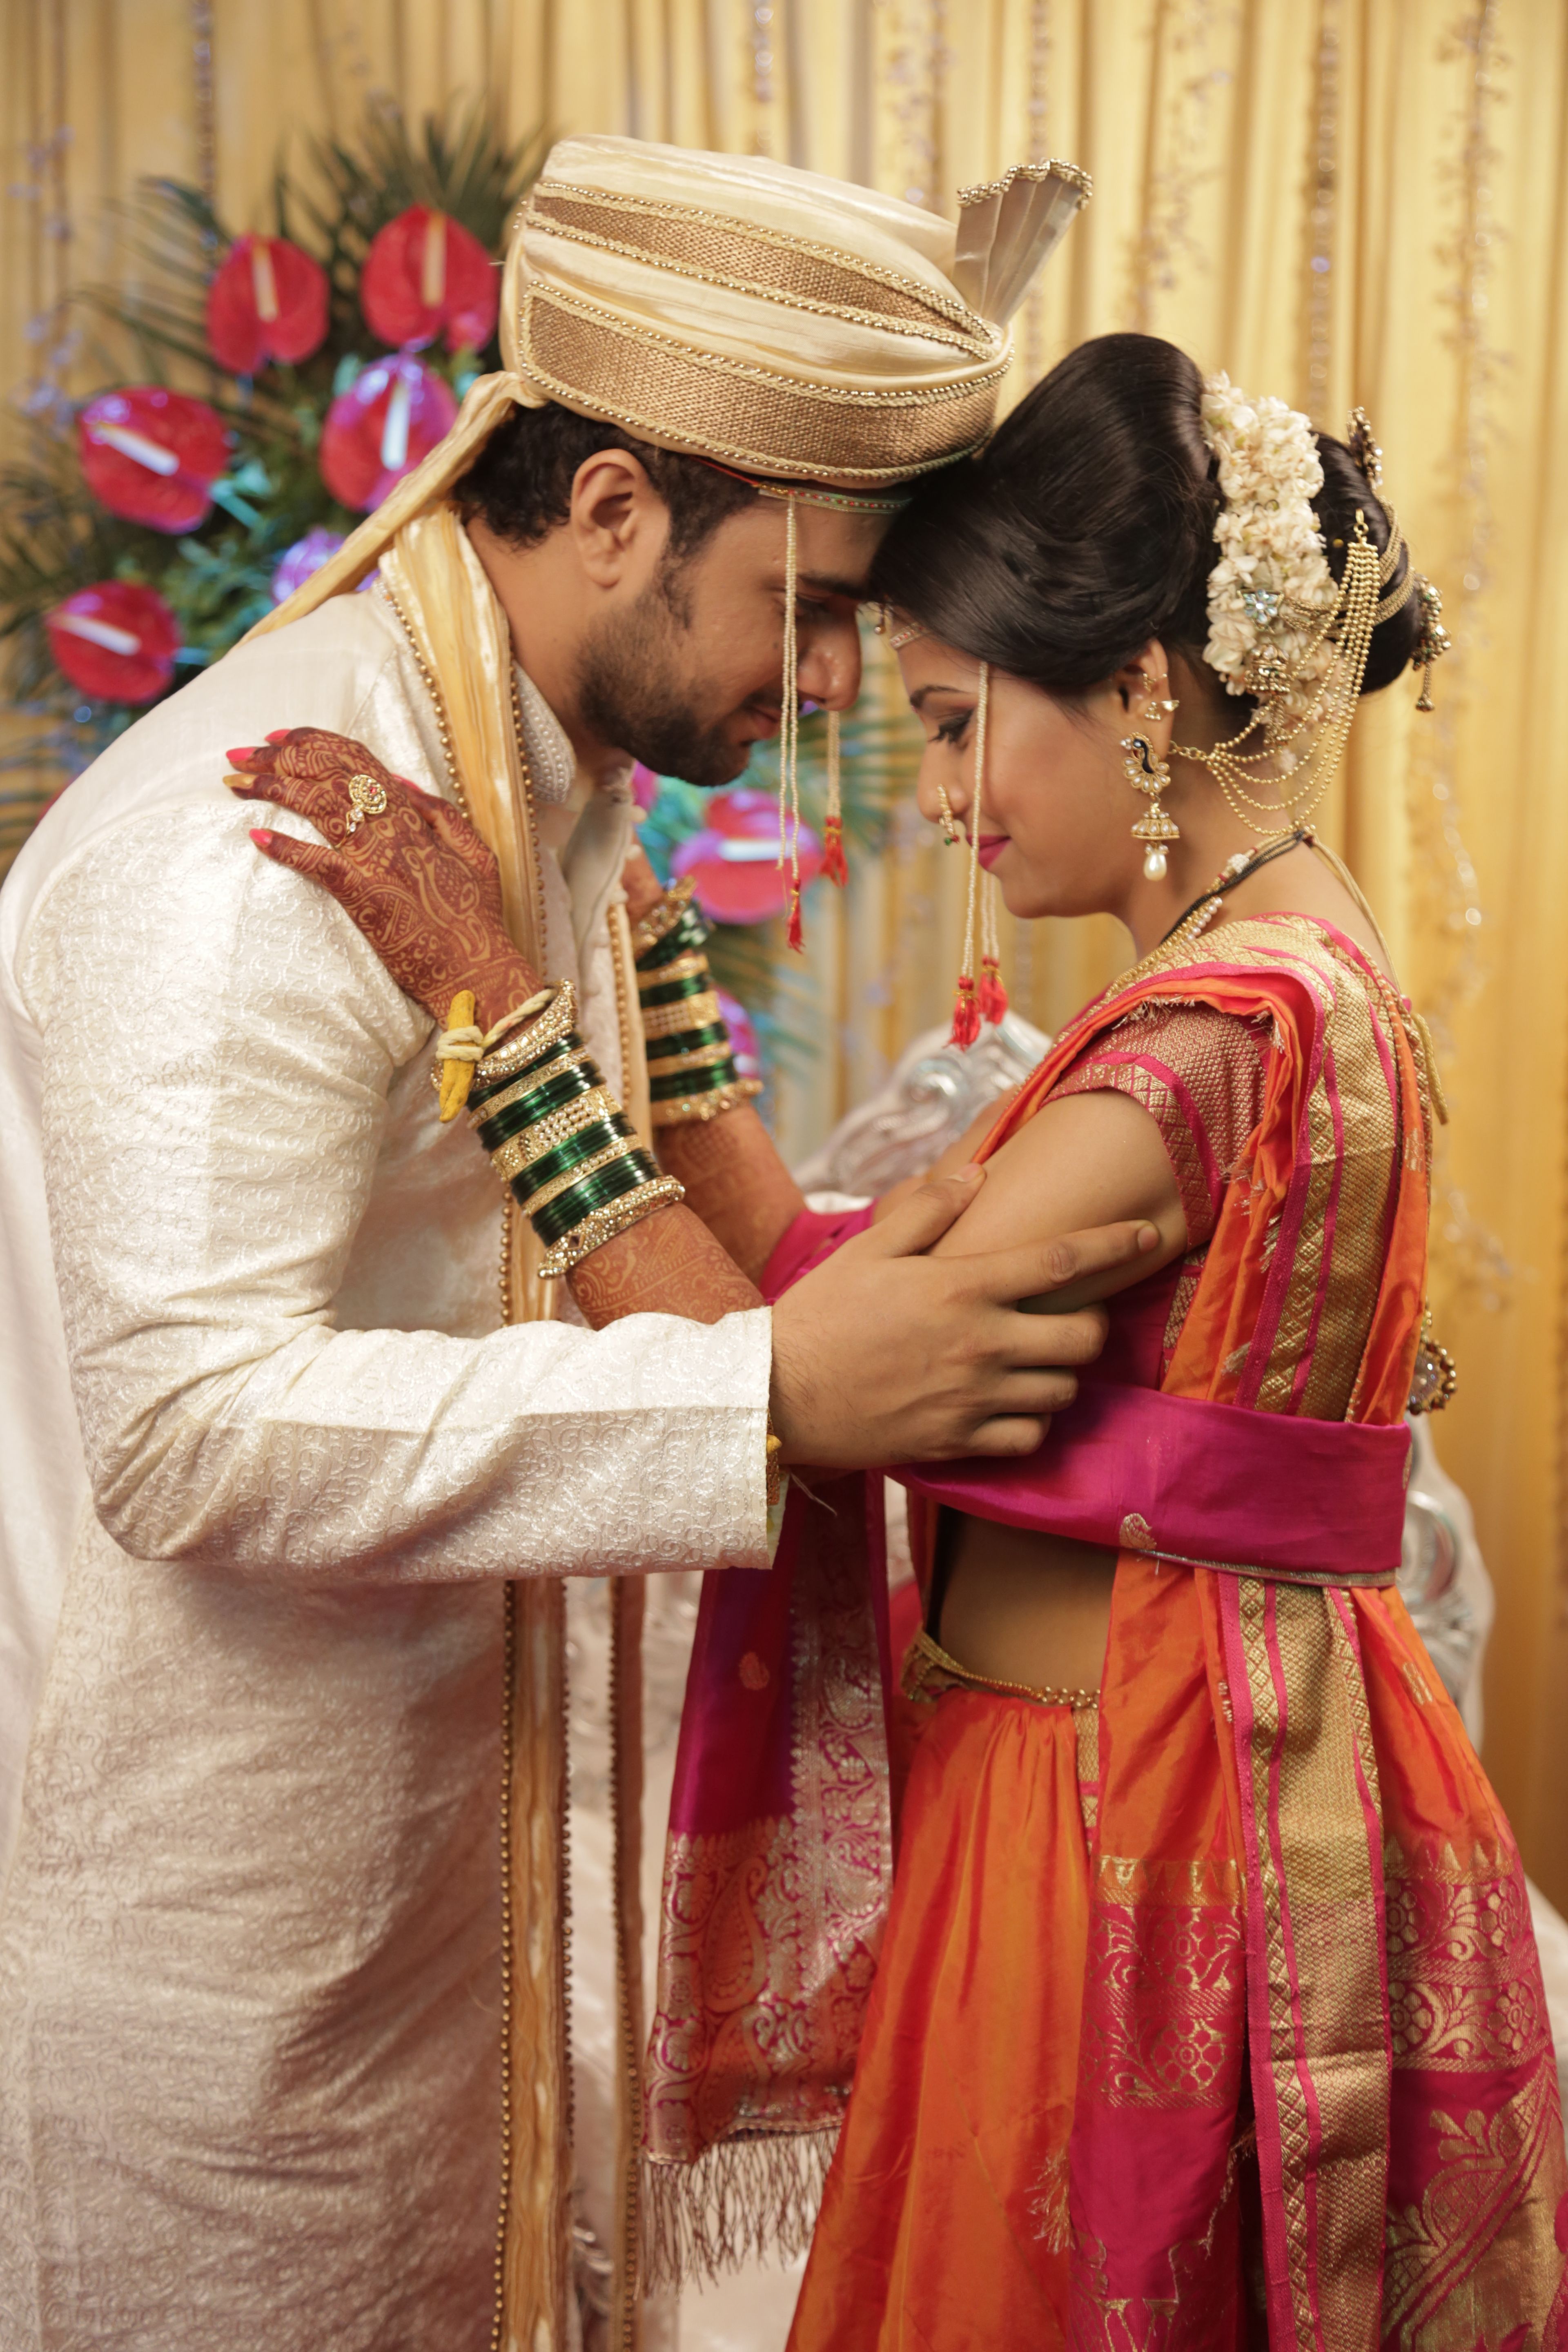 Shirley & Anupam's Maharashtrian wedding in Pune - Girish Joshi | Wedding  photographers in Pune & Mumbai